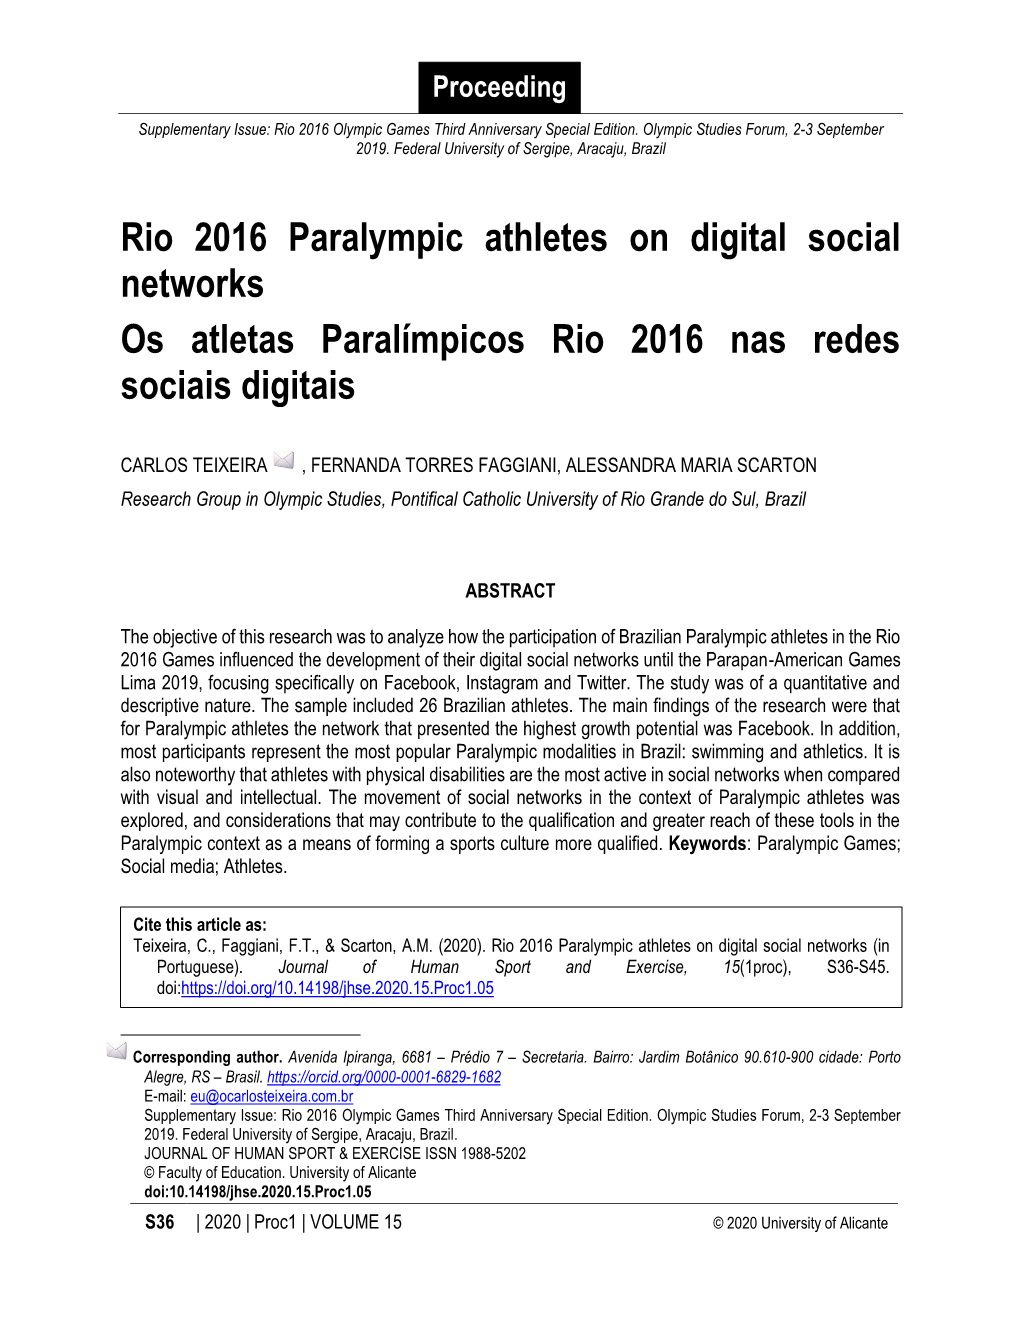 Rio 2016 Paralympic Athletes on Digital Social Networks Os Atletas Paralímpicos Rio 2016 Nas Redes Sociais Digitais